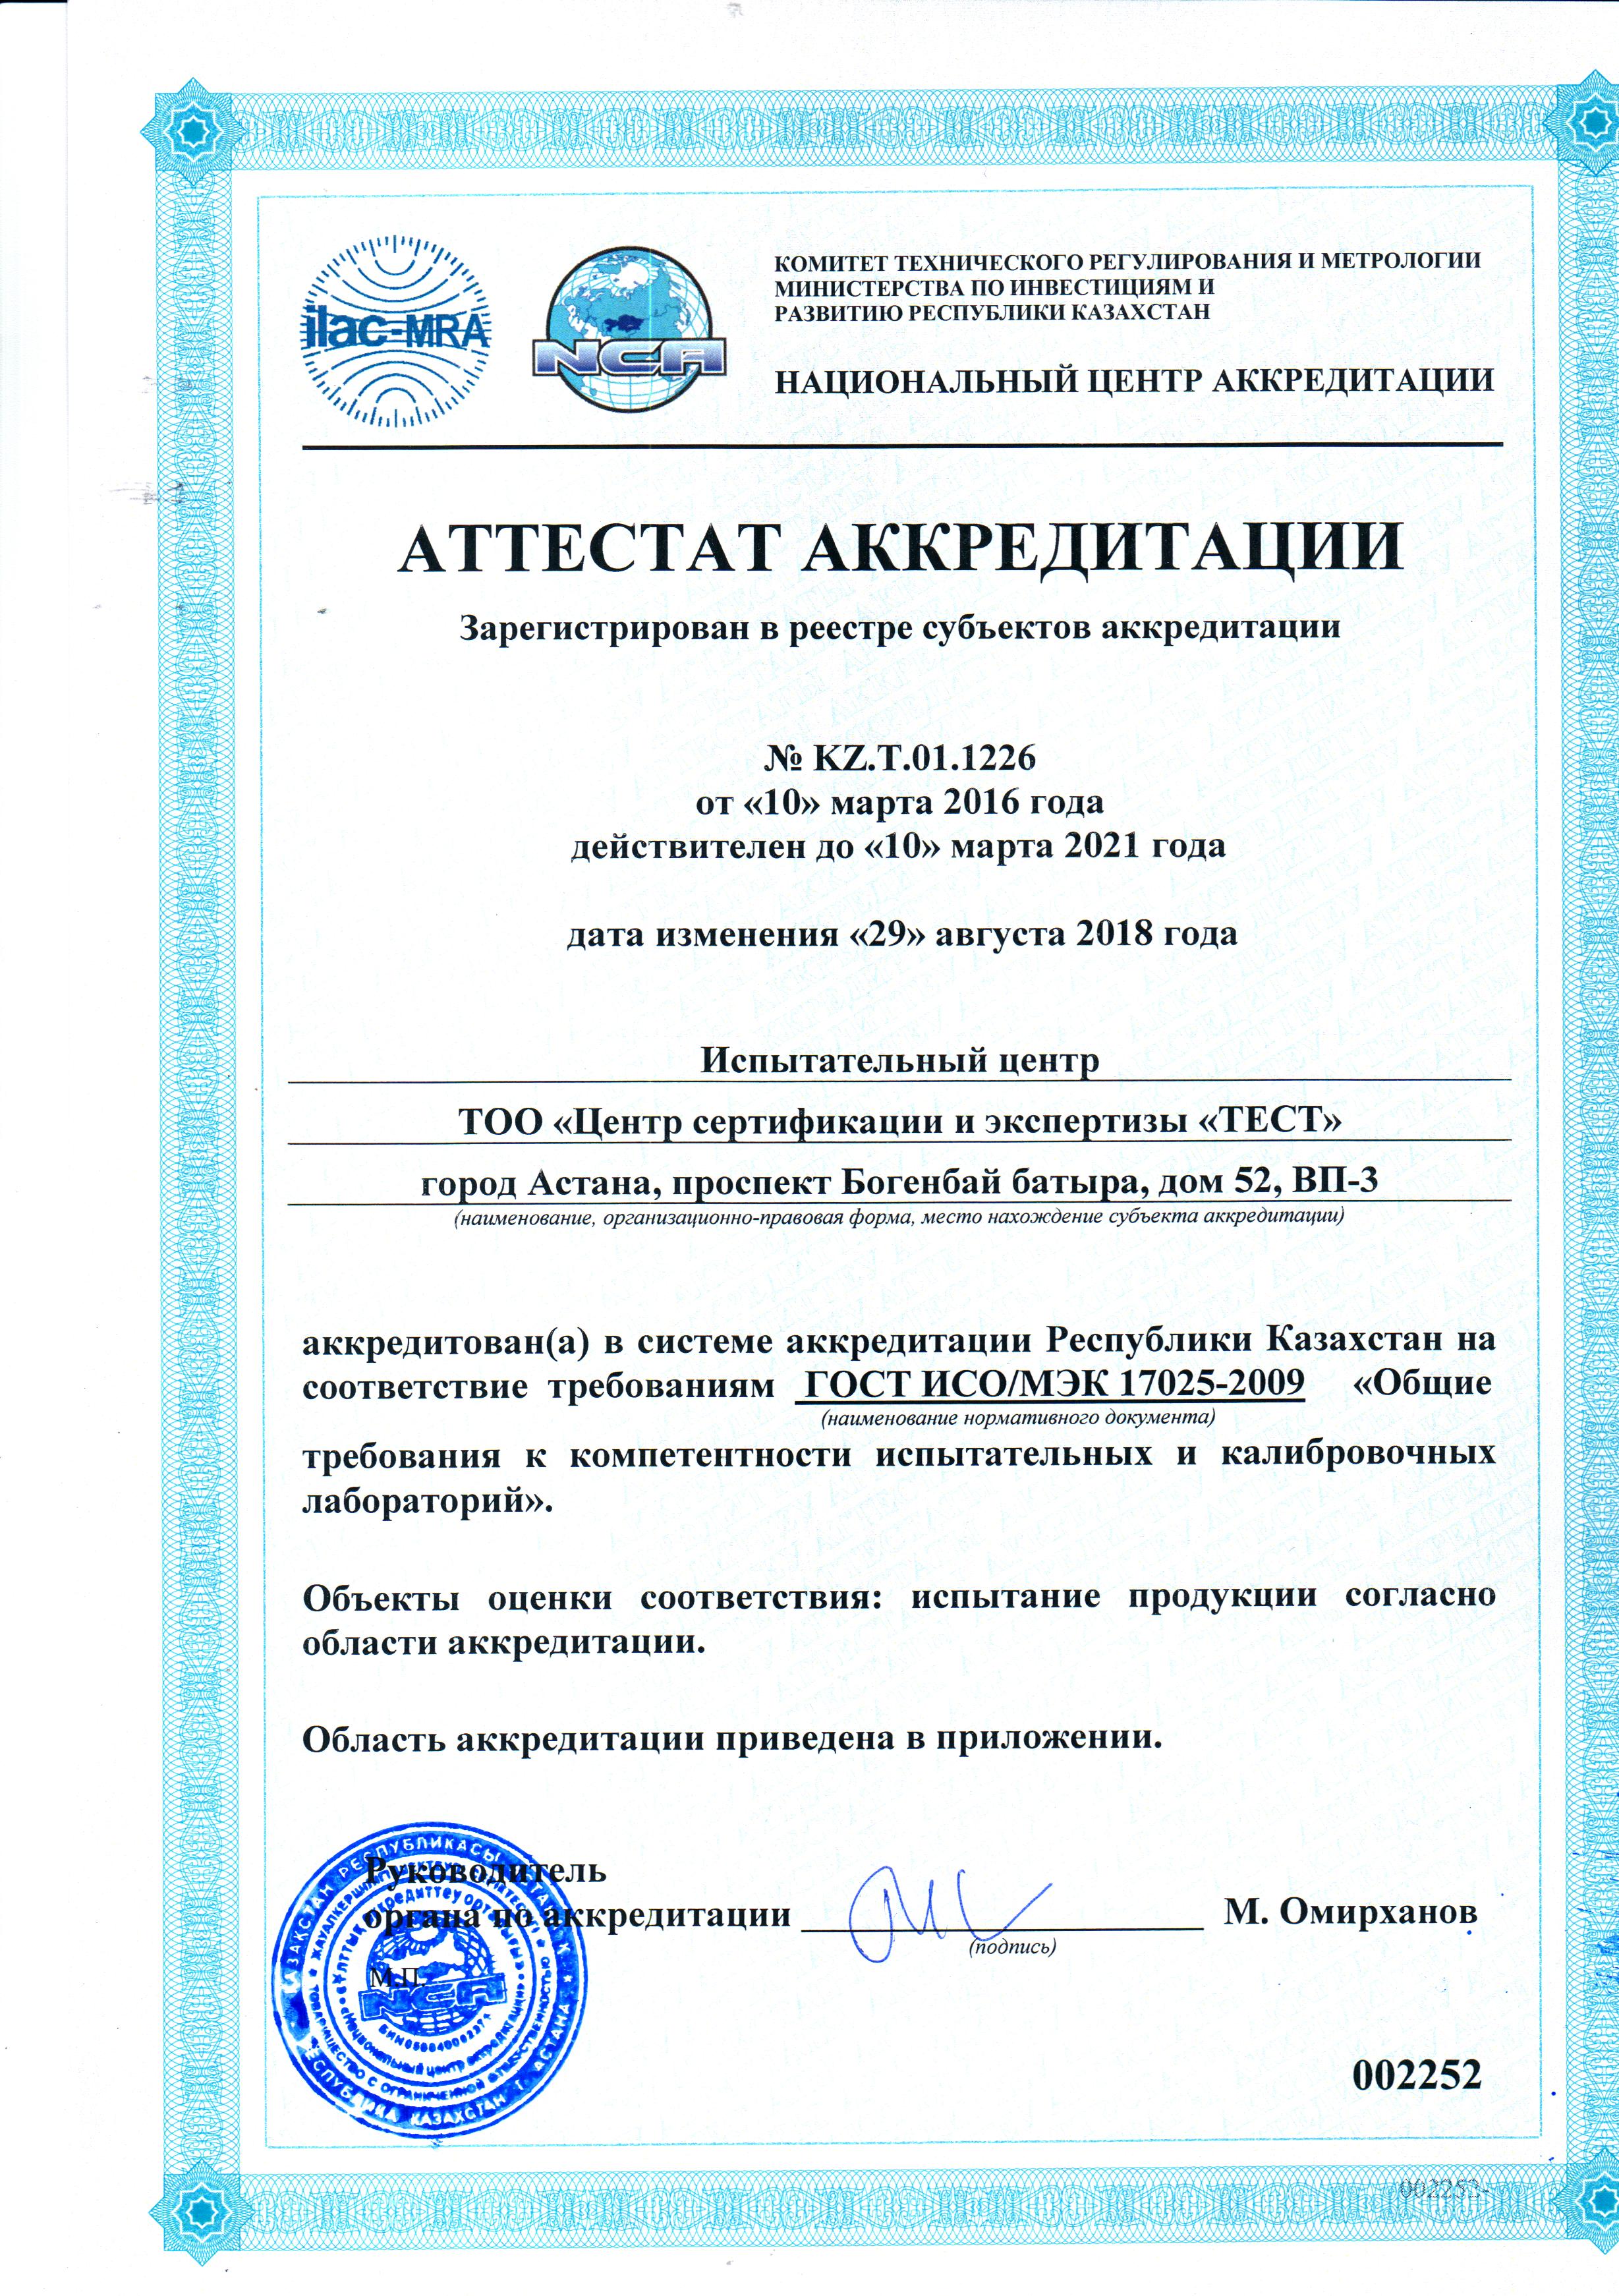 аттестат аккредитации KZ.Т.01.1226 от 10.03.2016г.